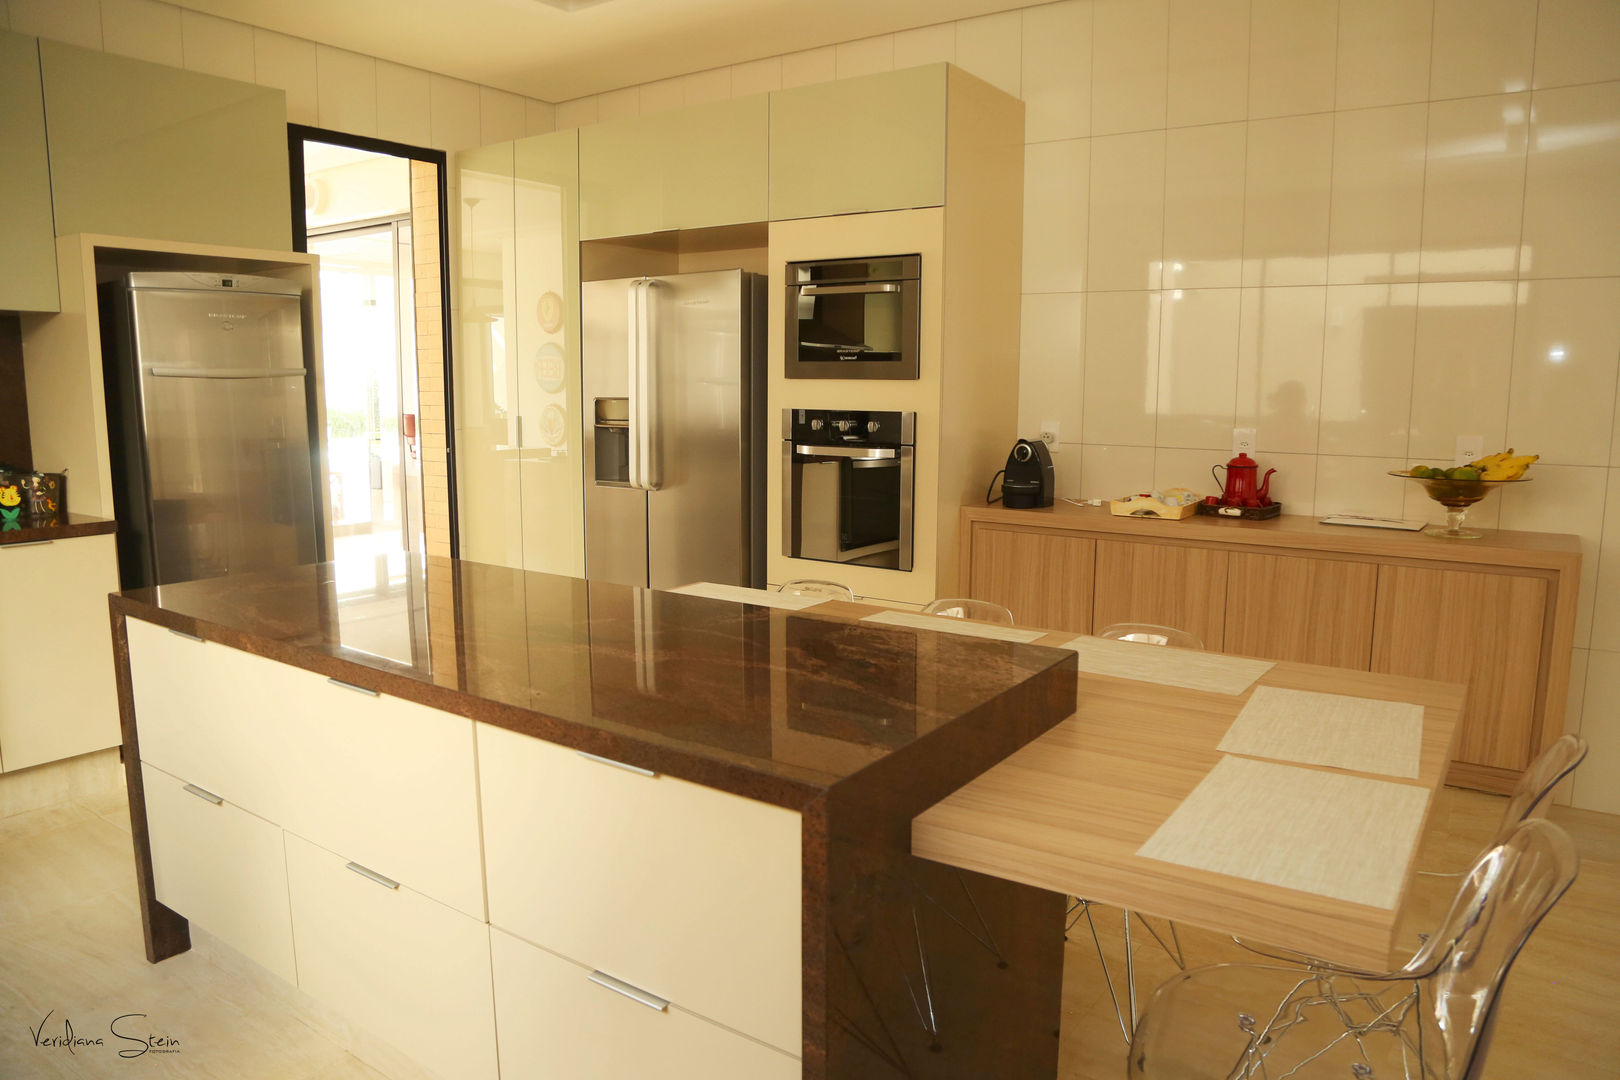 Cozinha - Casa Pérola Cia de Arquitetura Cozinhas clássicas cozinha planejada,mobiliário,interiores